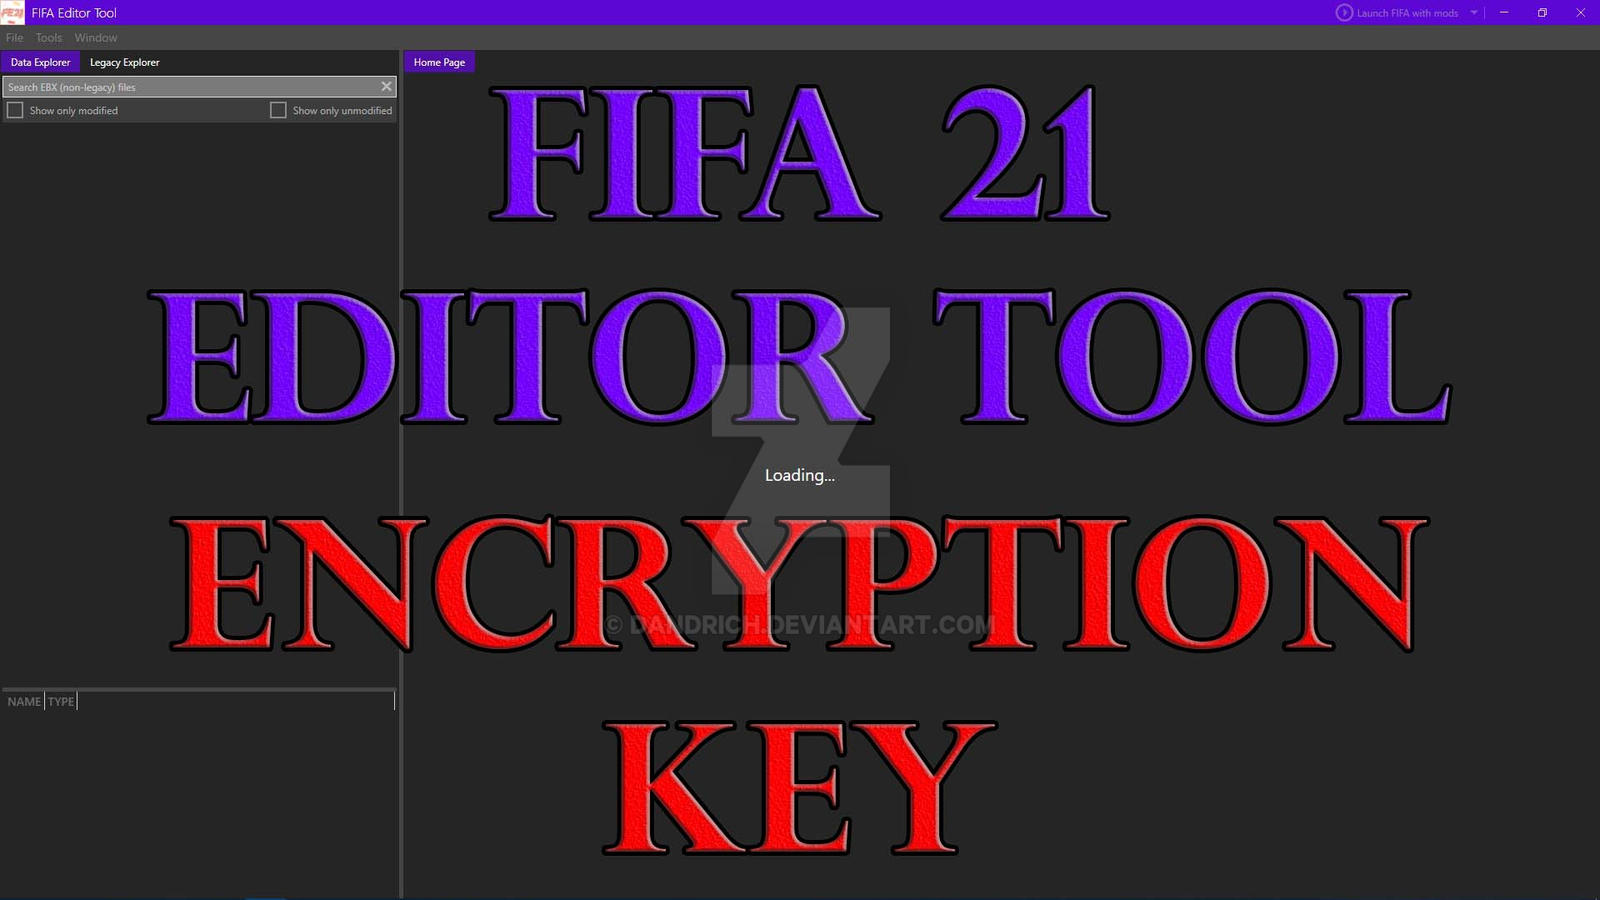 Fifa tools. FIFA Editor Tool 22. FIFA 22 Editor Tool Key. FIFA Editor Tool 22 как пользоваться.